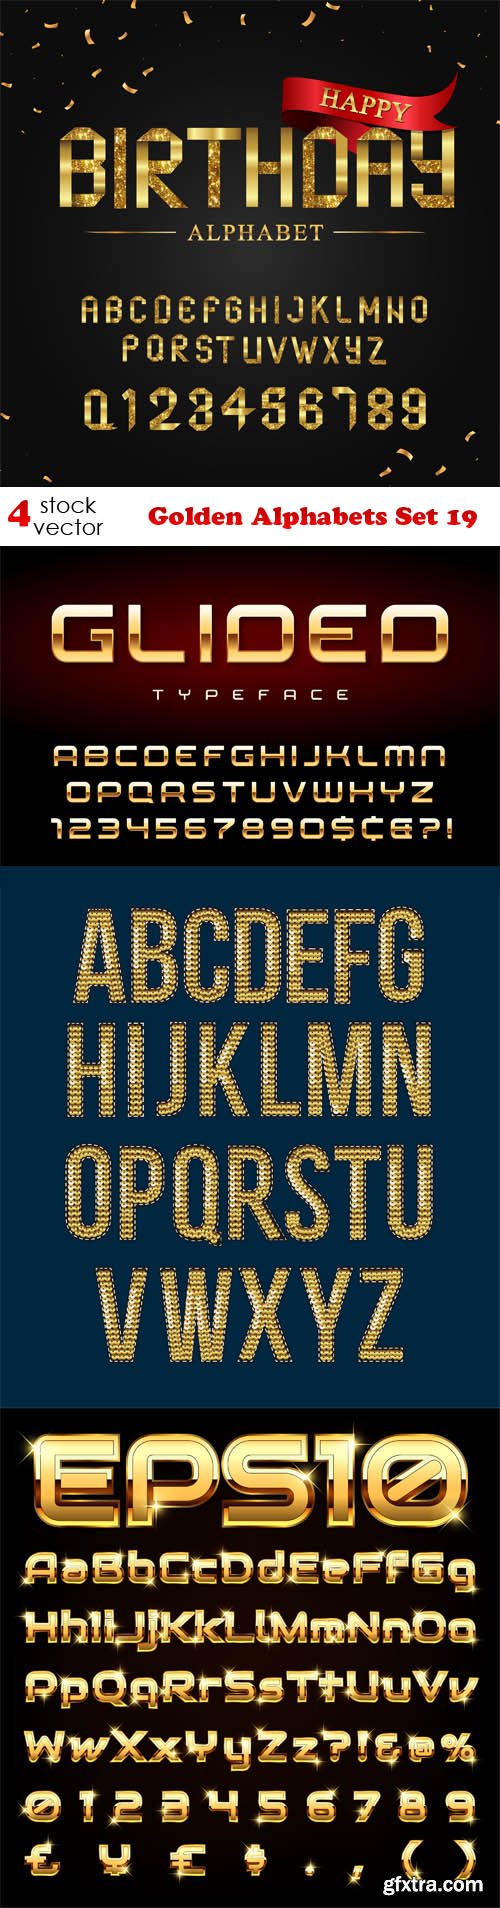 Vectors - Golden Alphabets Set 19